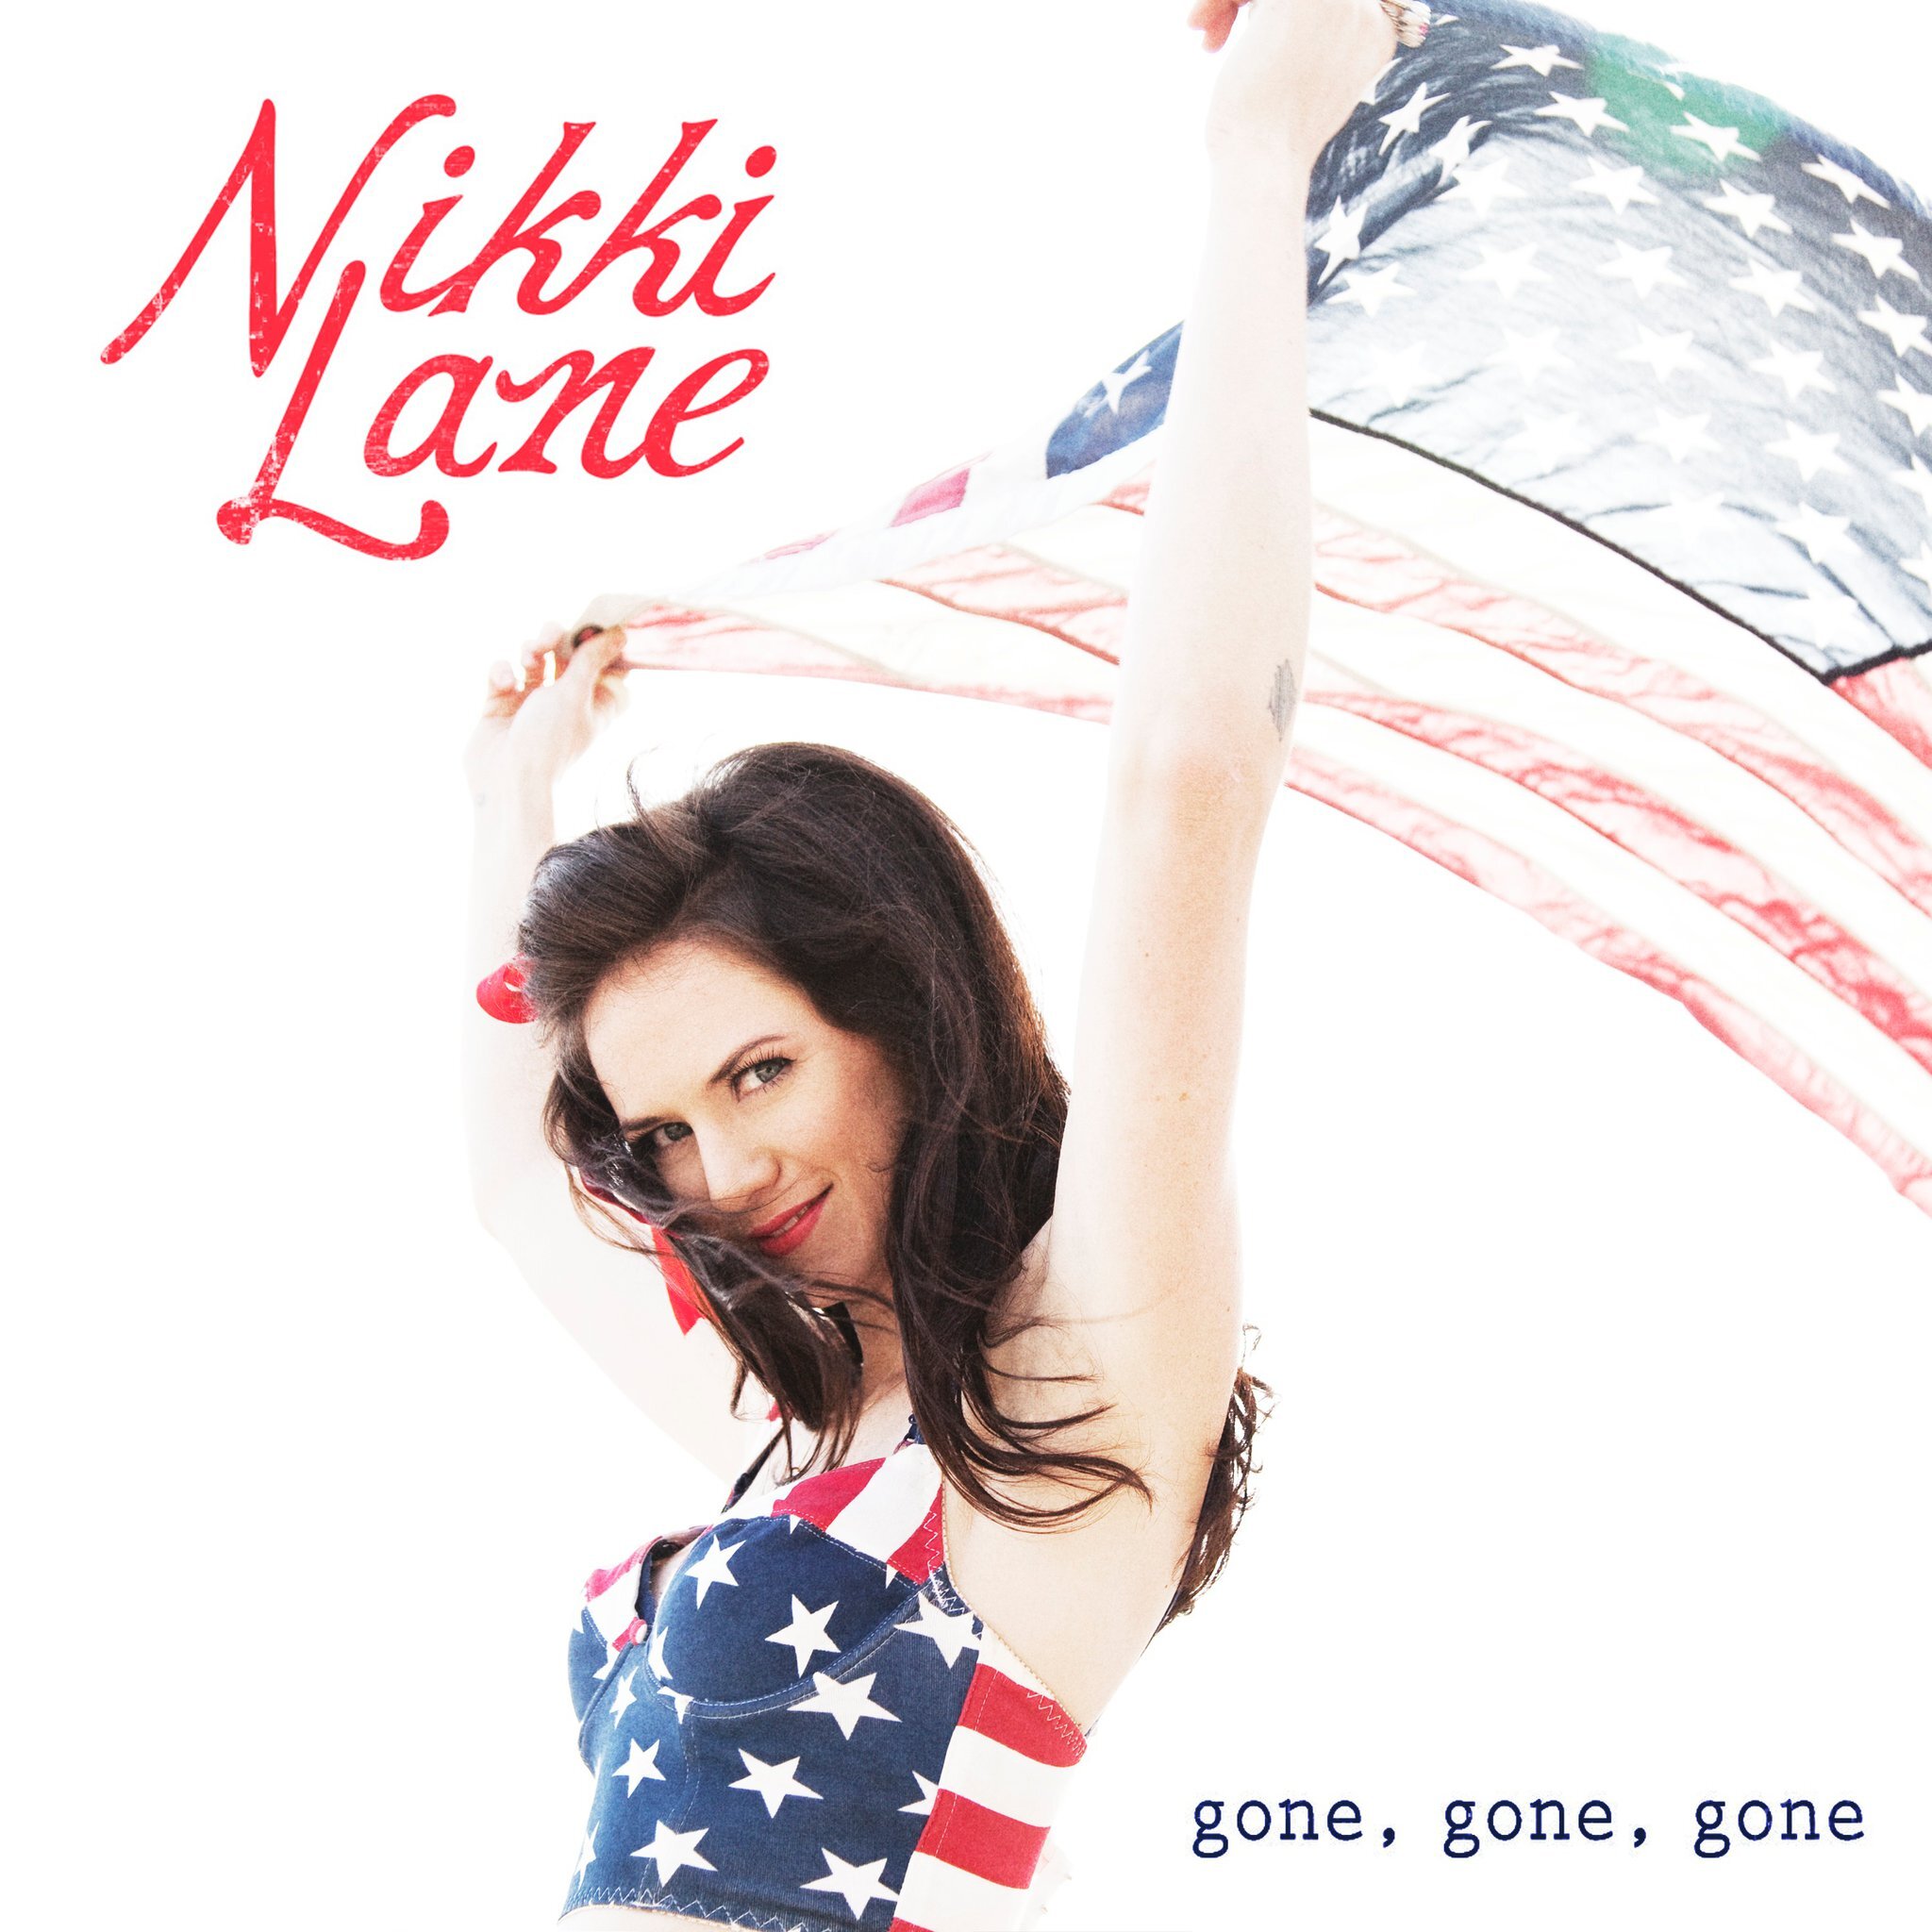 Обложки альбомов Nikki Lee. Nikki wire. Gone gone песня исполнитель. Песни nikki